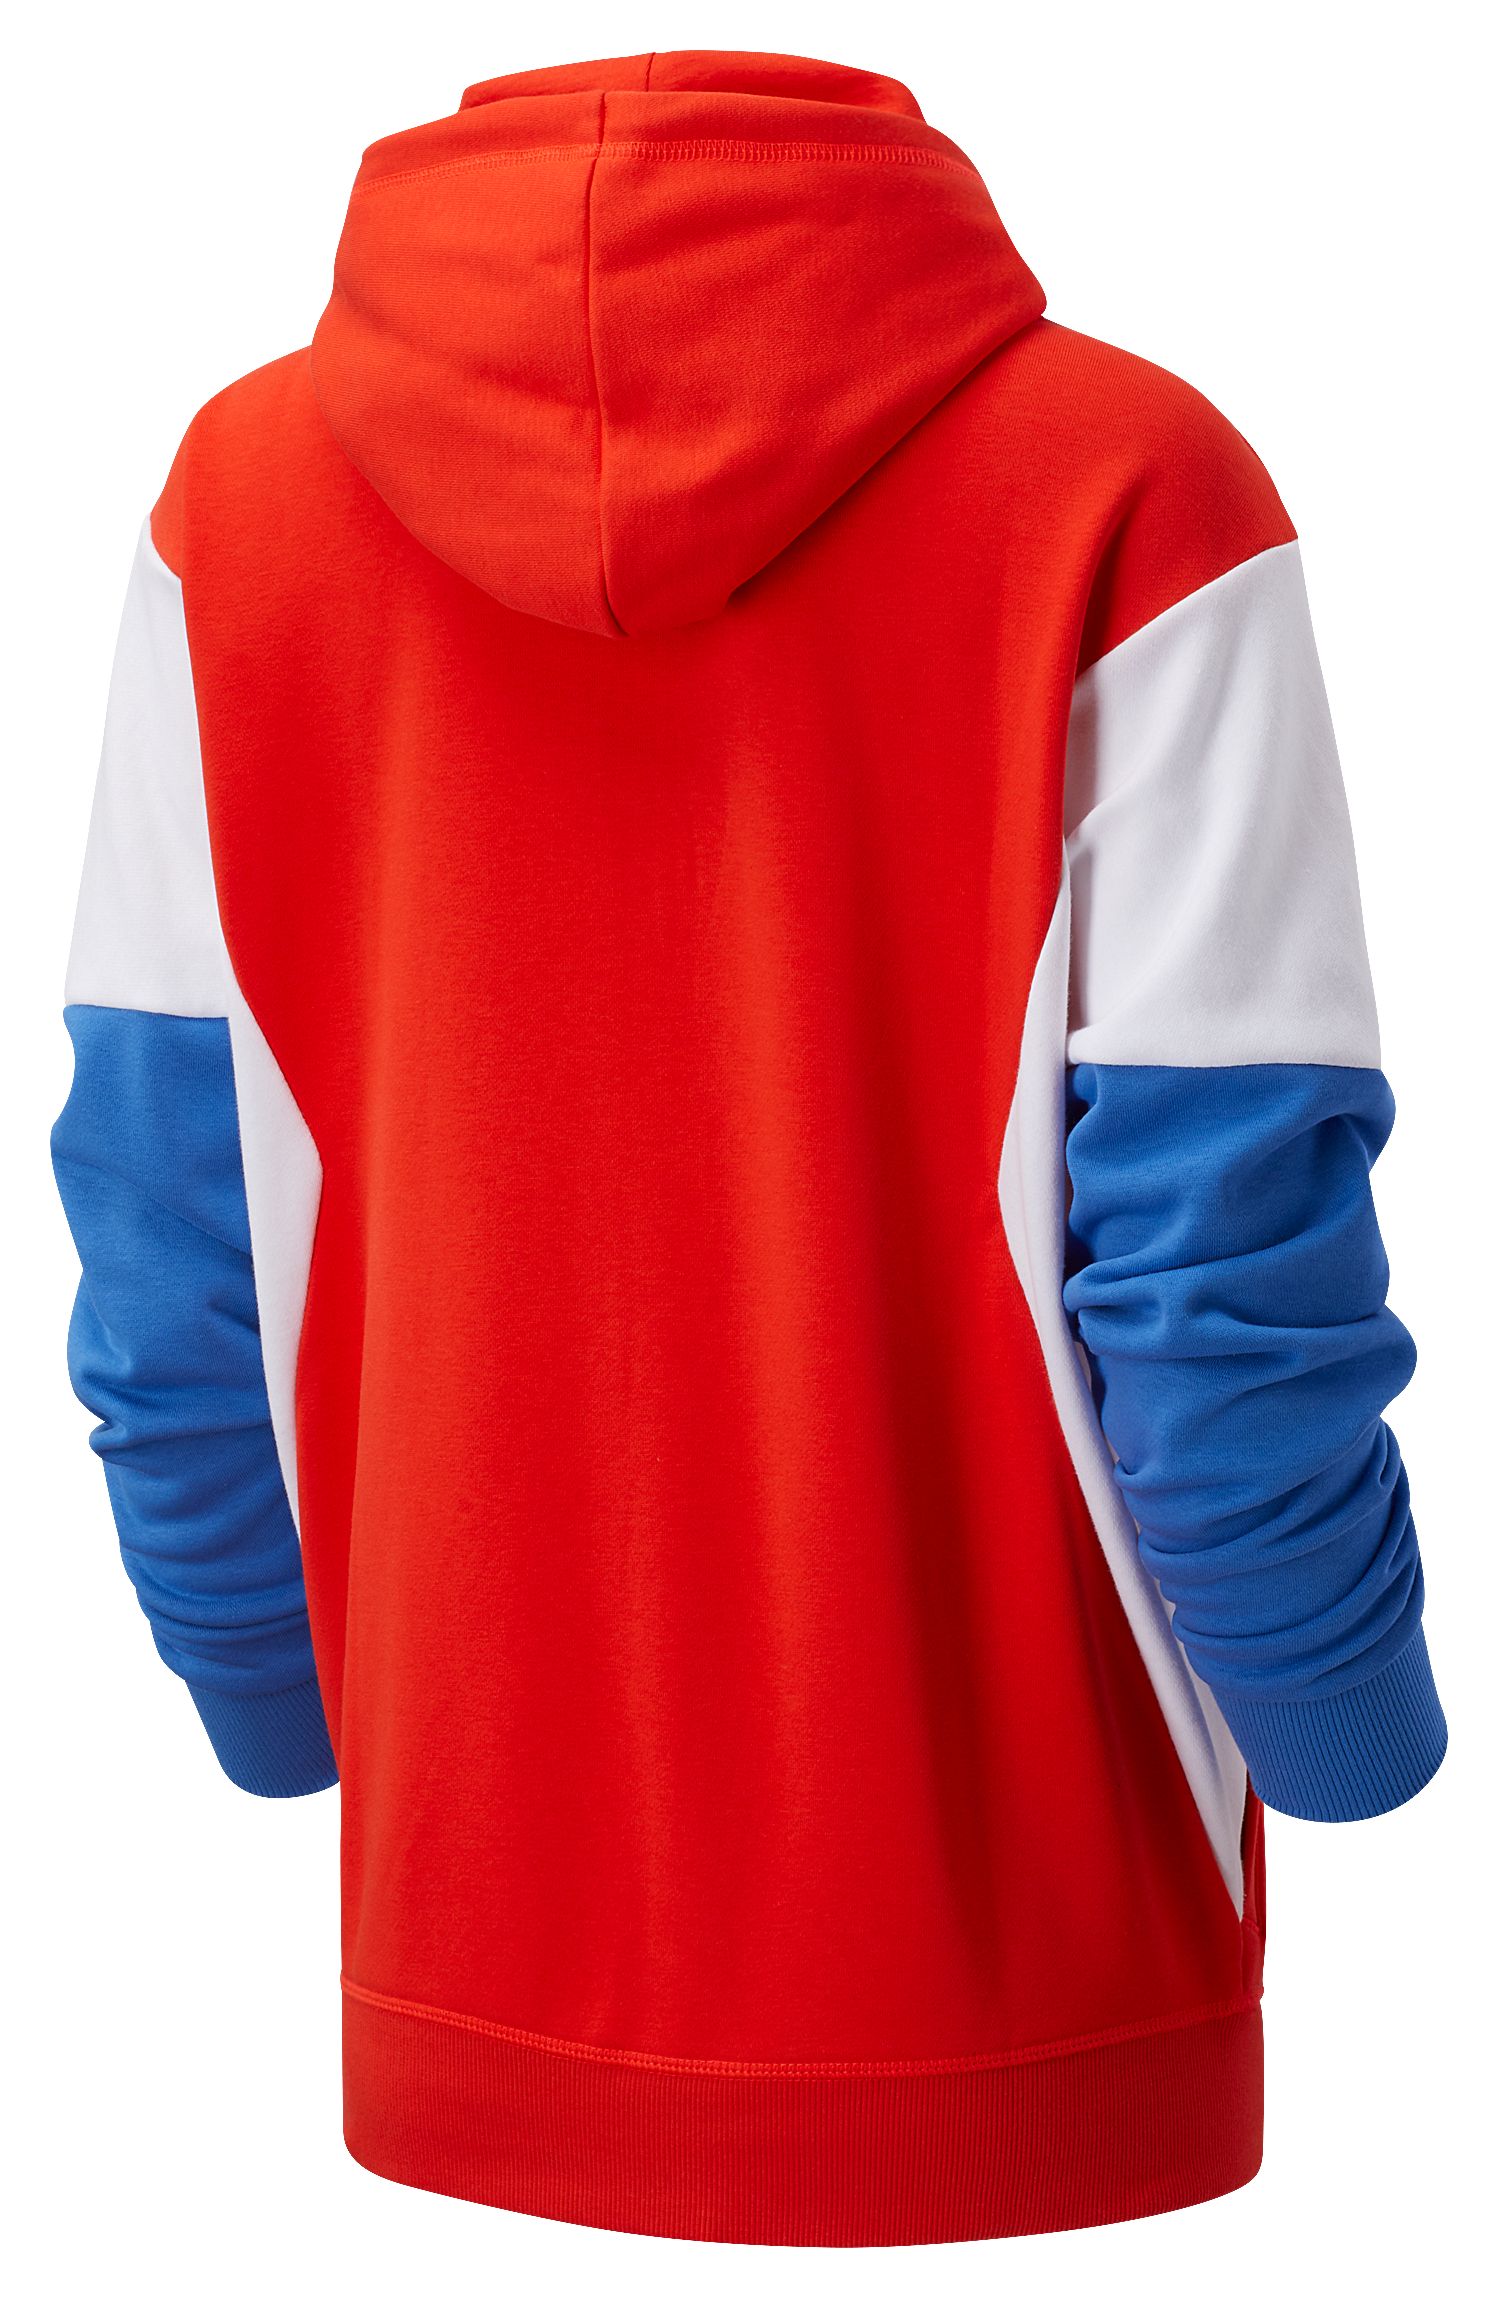 nb athletics hoodie